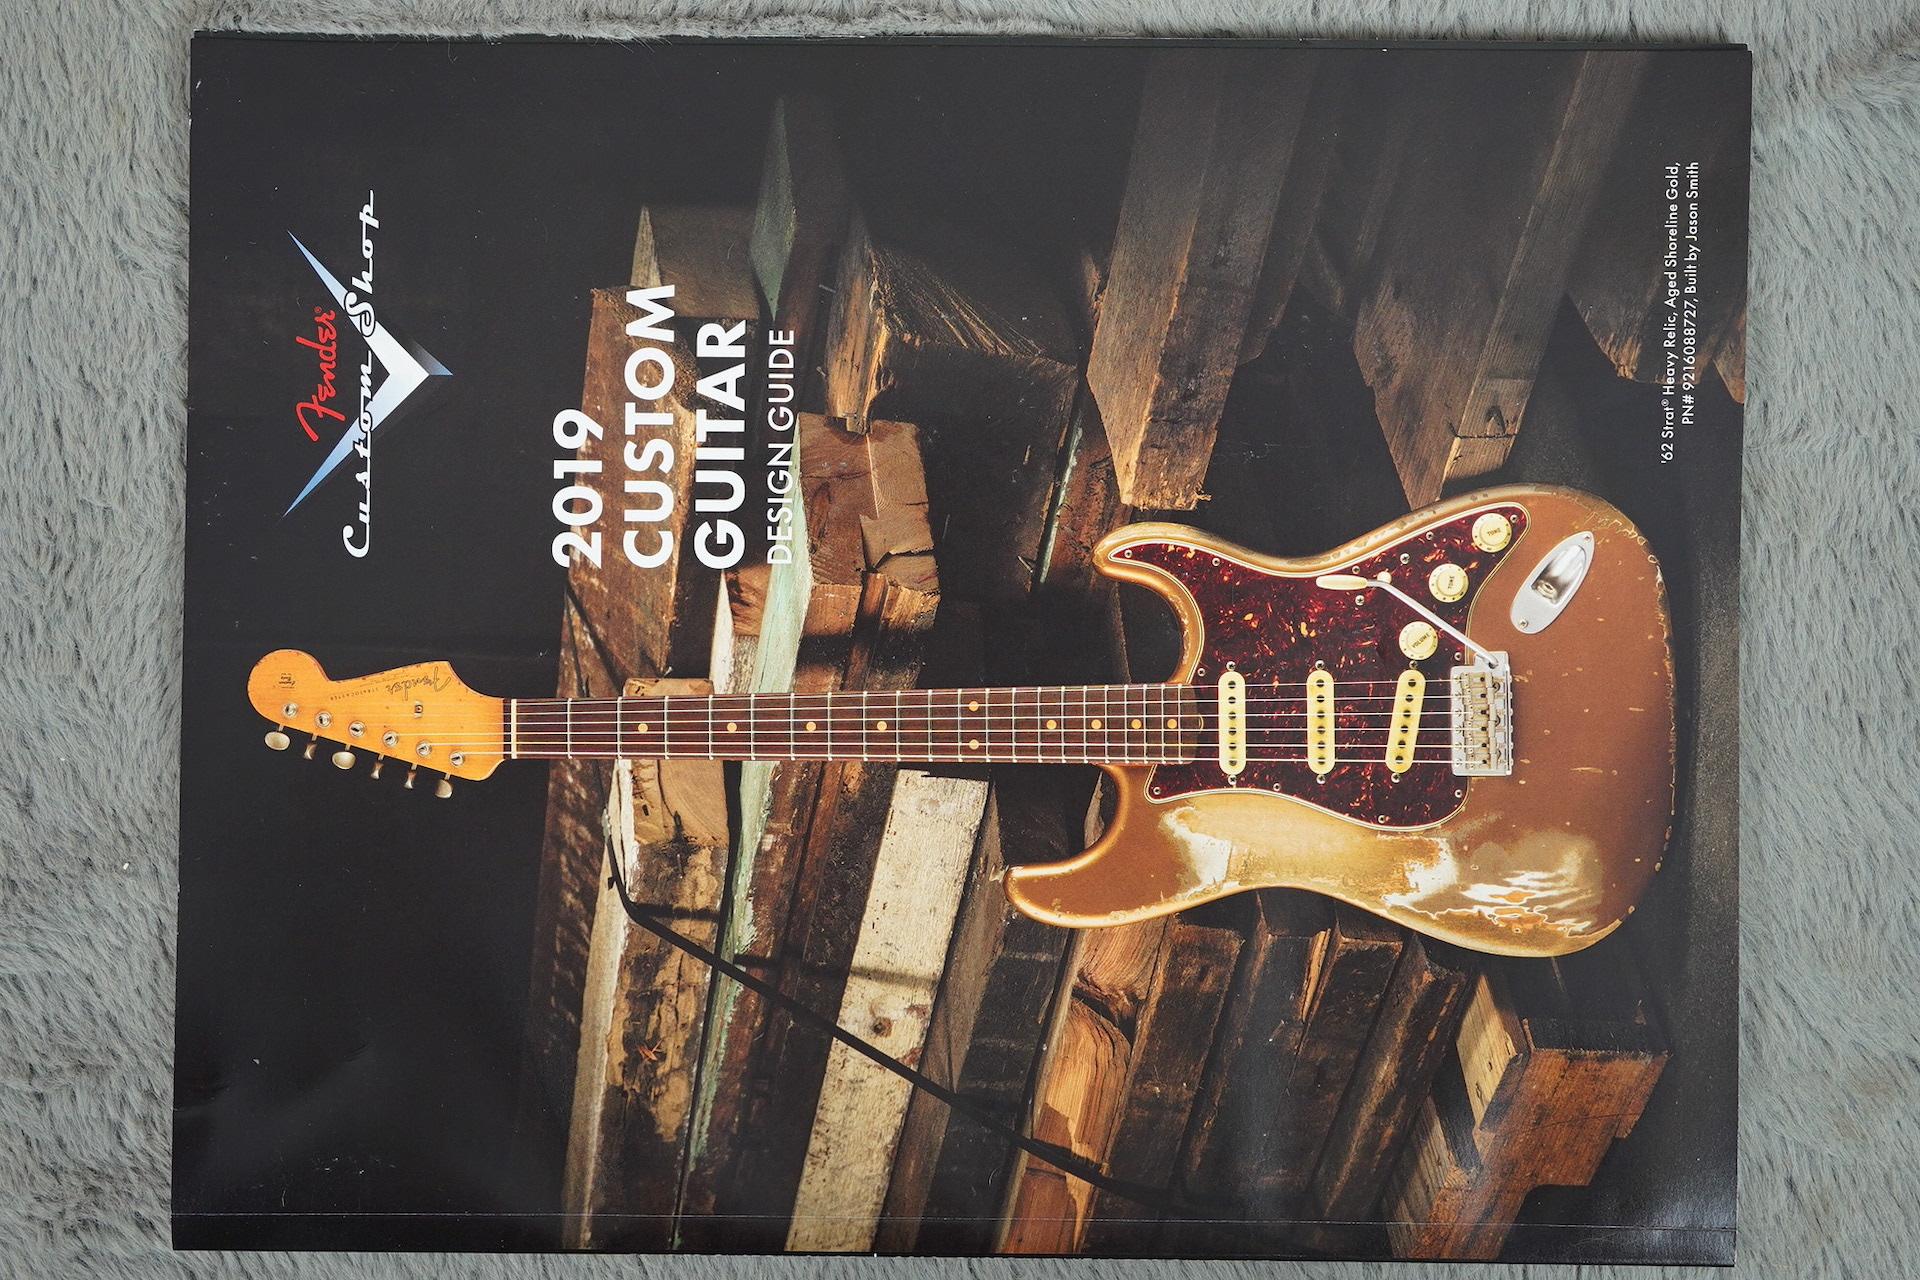 2019 Fender Custom Shop Stratocaster